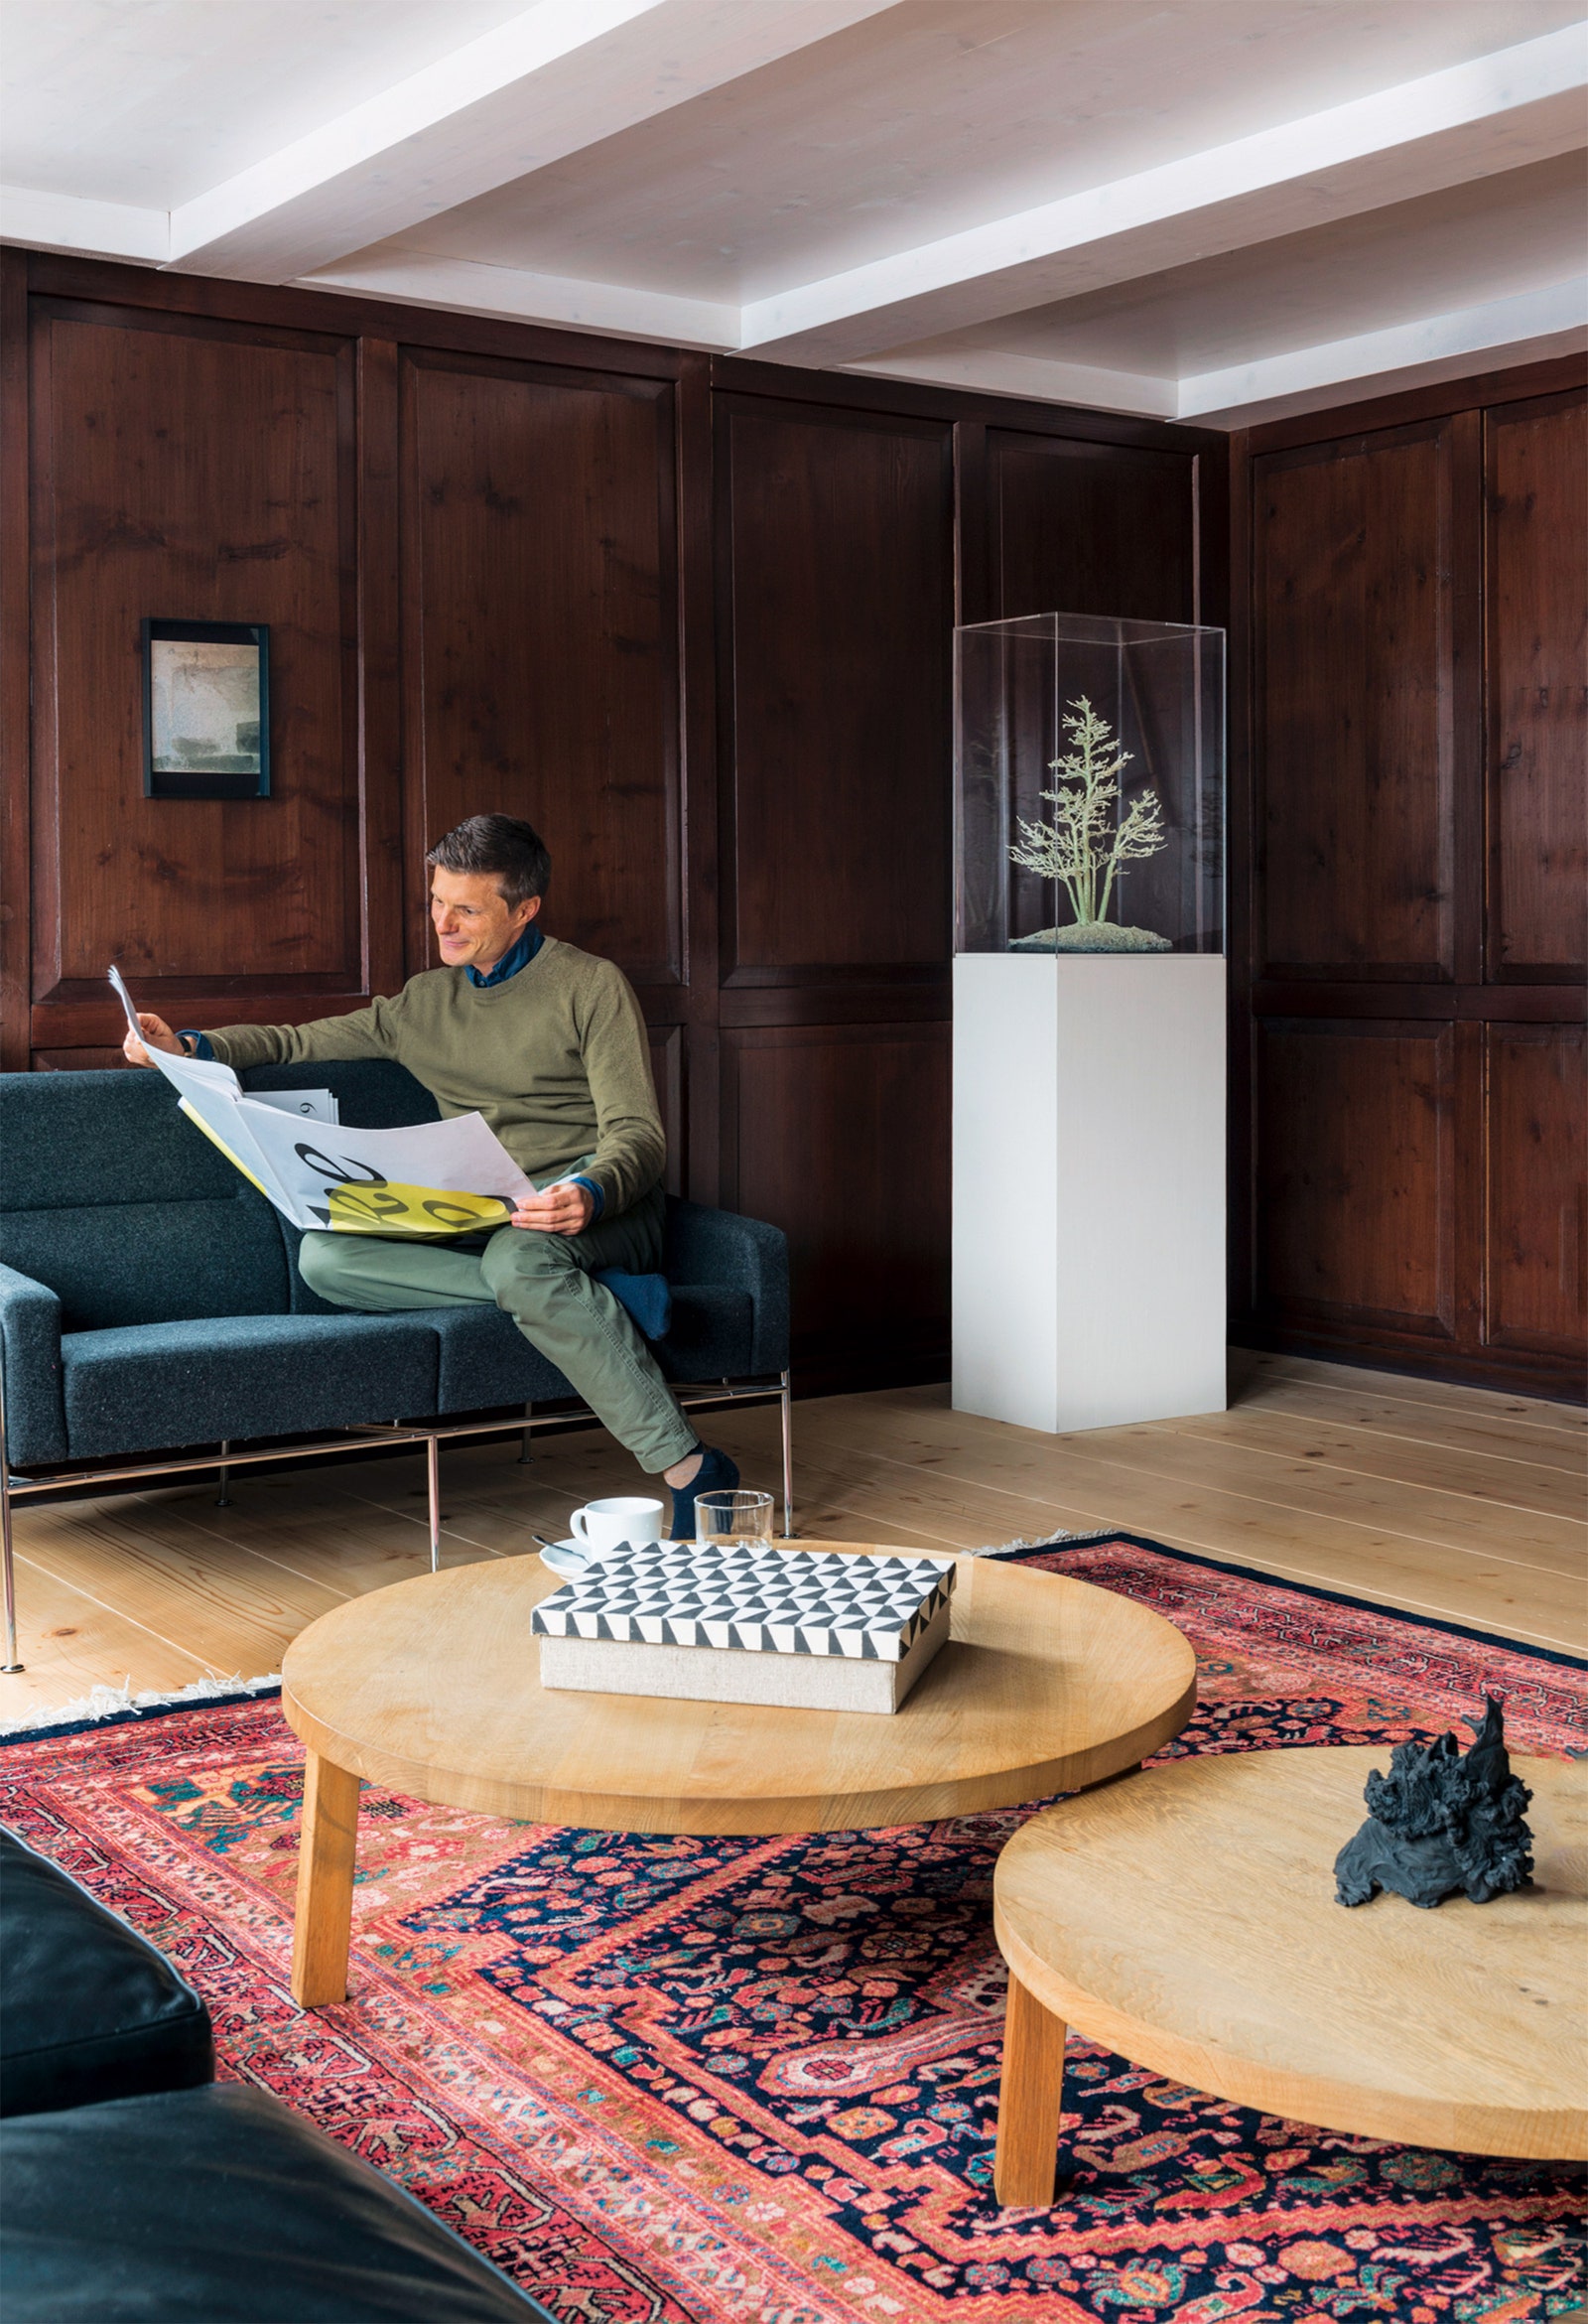 Хозяин дома Стефан Ломбарди на диване по дизайну Арне Якобсена на стене работа Гауденца Синьорелля справа скульп­тура...